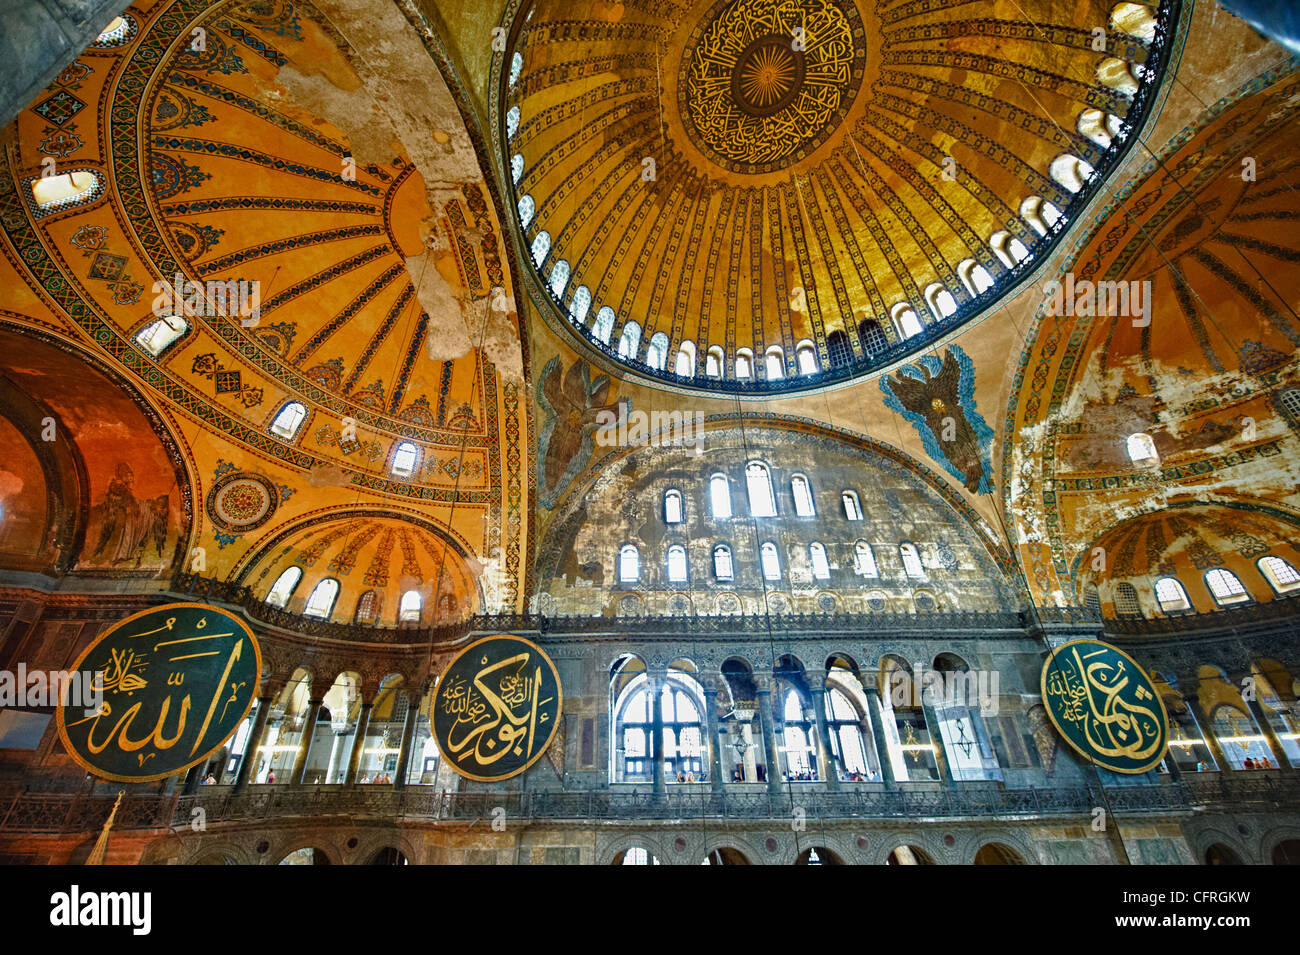 La decoración islámica en las bóvedas del interior de Hagia Sophia (Ayasofya ) , Estambul, Turquía Foto de stock